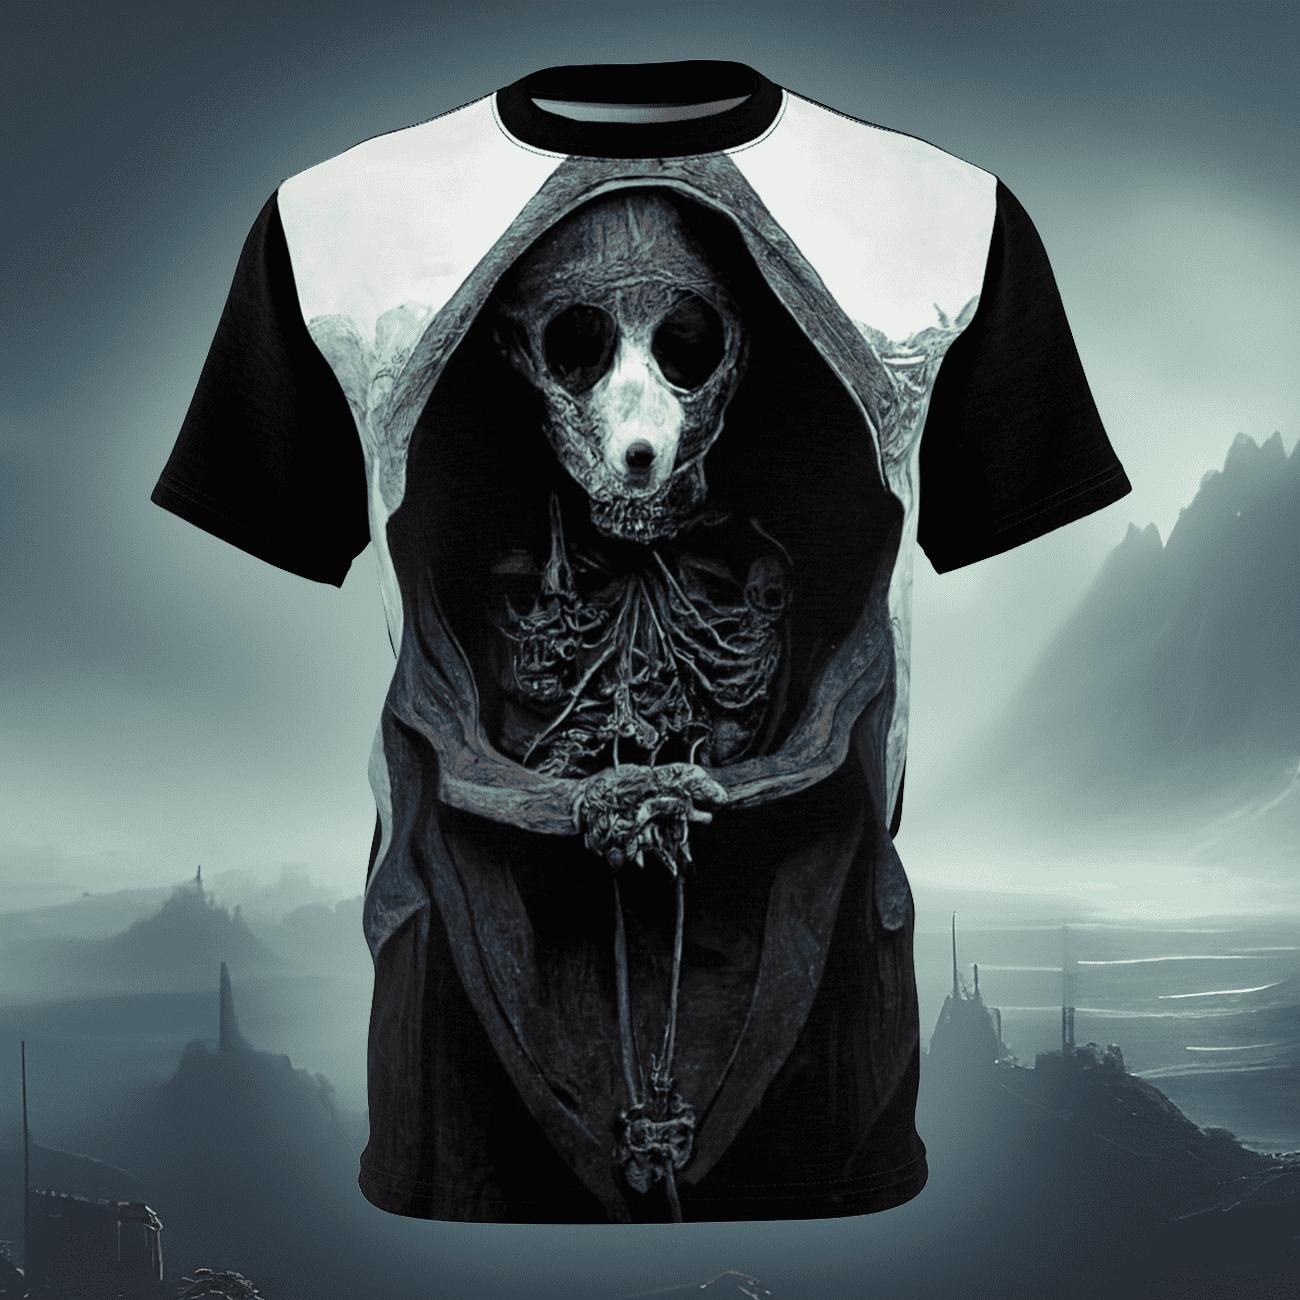 Gothic horror art t-shirt of an evil rat priest, monster.